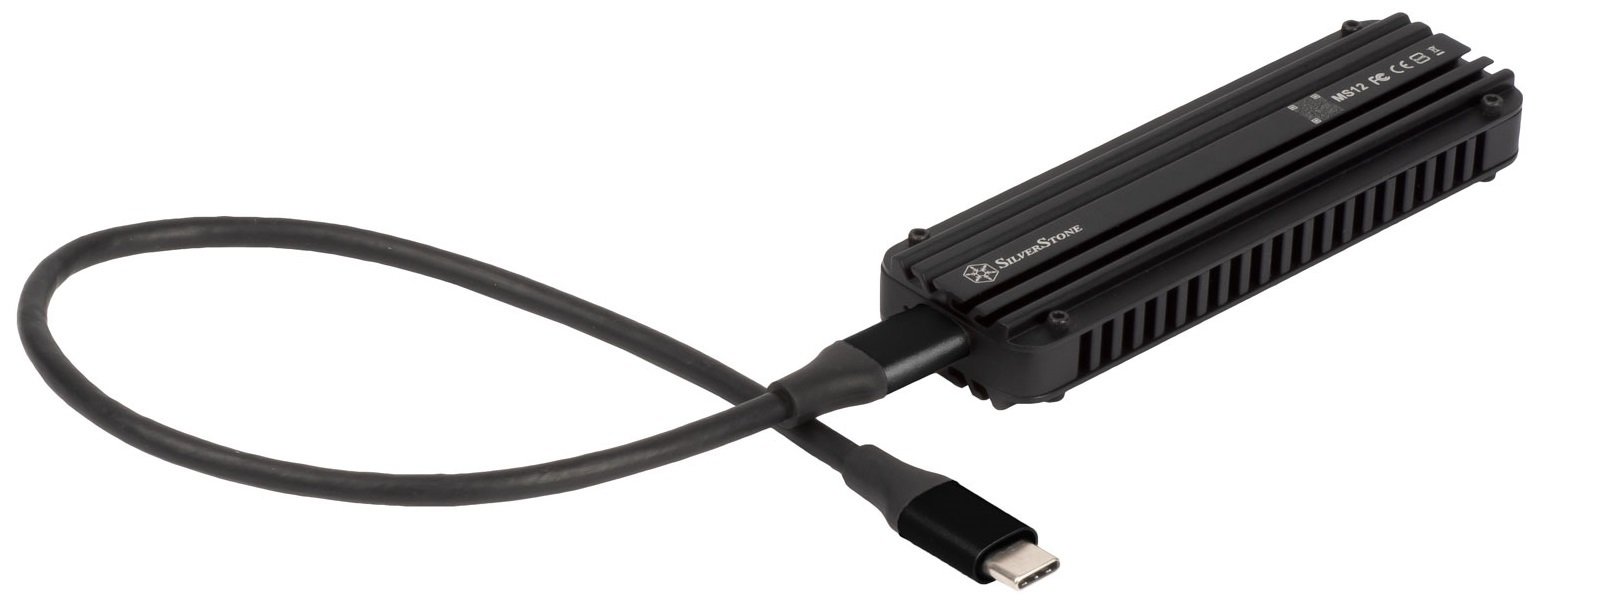 Портативный корпус SilverStone для SSD NVMe M.2 SST-MS12 USB 3.2 Type-C 20Gbps (2242/2260/2280) фото 8